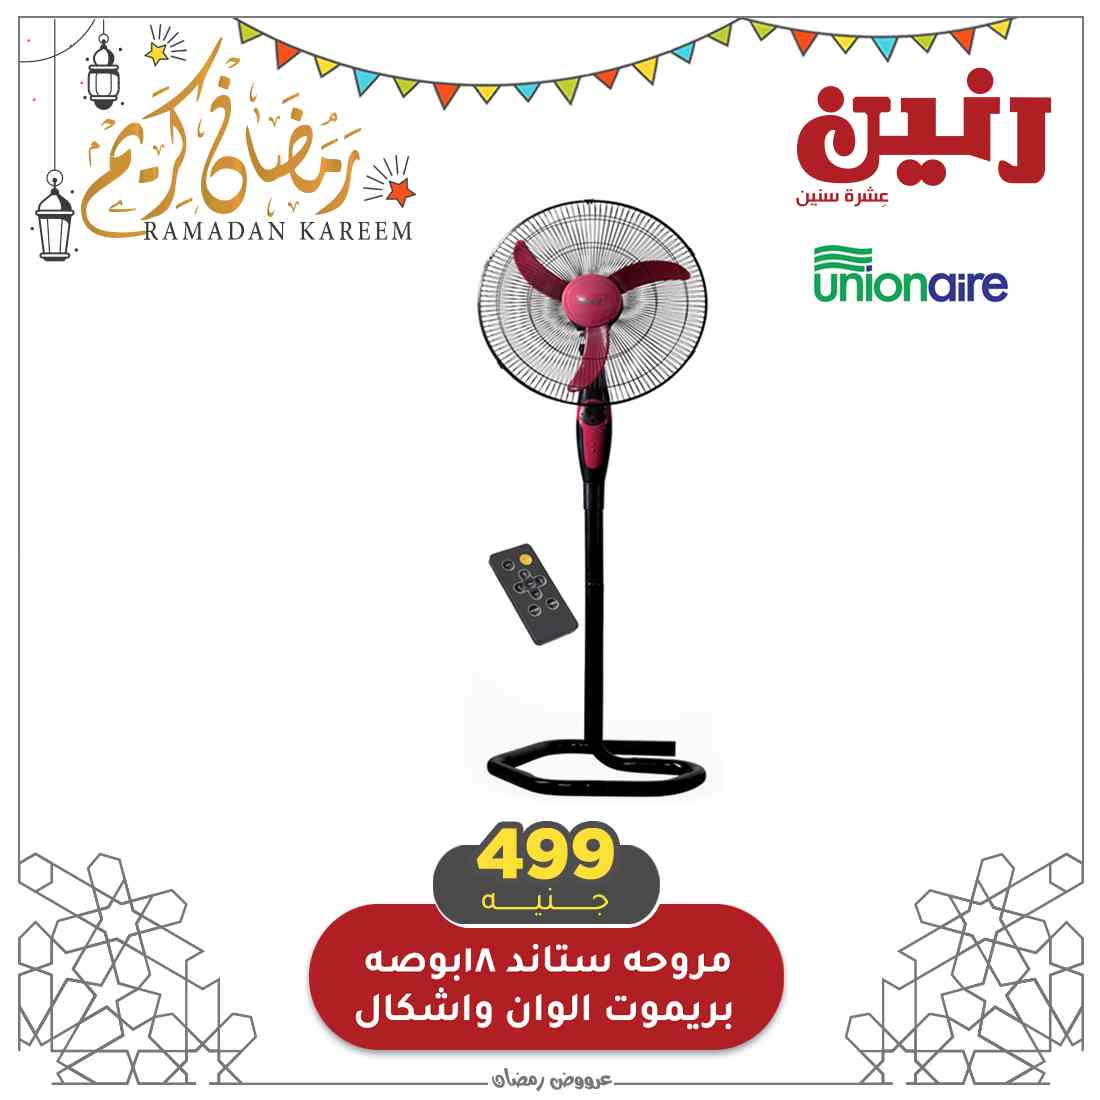 عروض رنين أجهزة كهربائية لـ يوم الثلاثاء والأربعاء 13/14 بمناسبة رمضان 2021 1